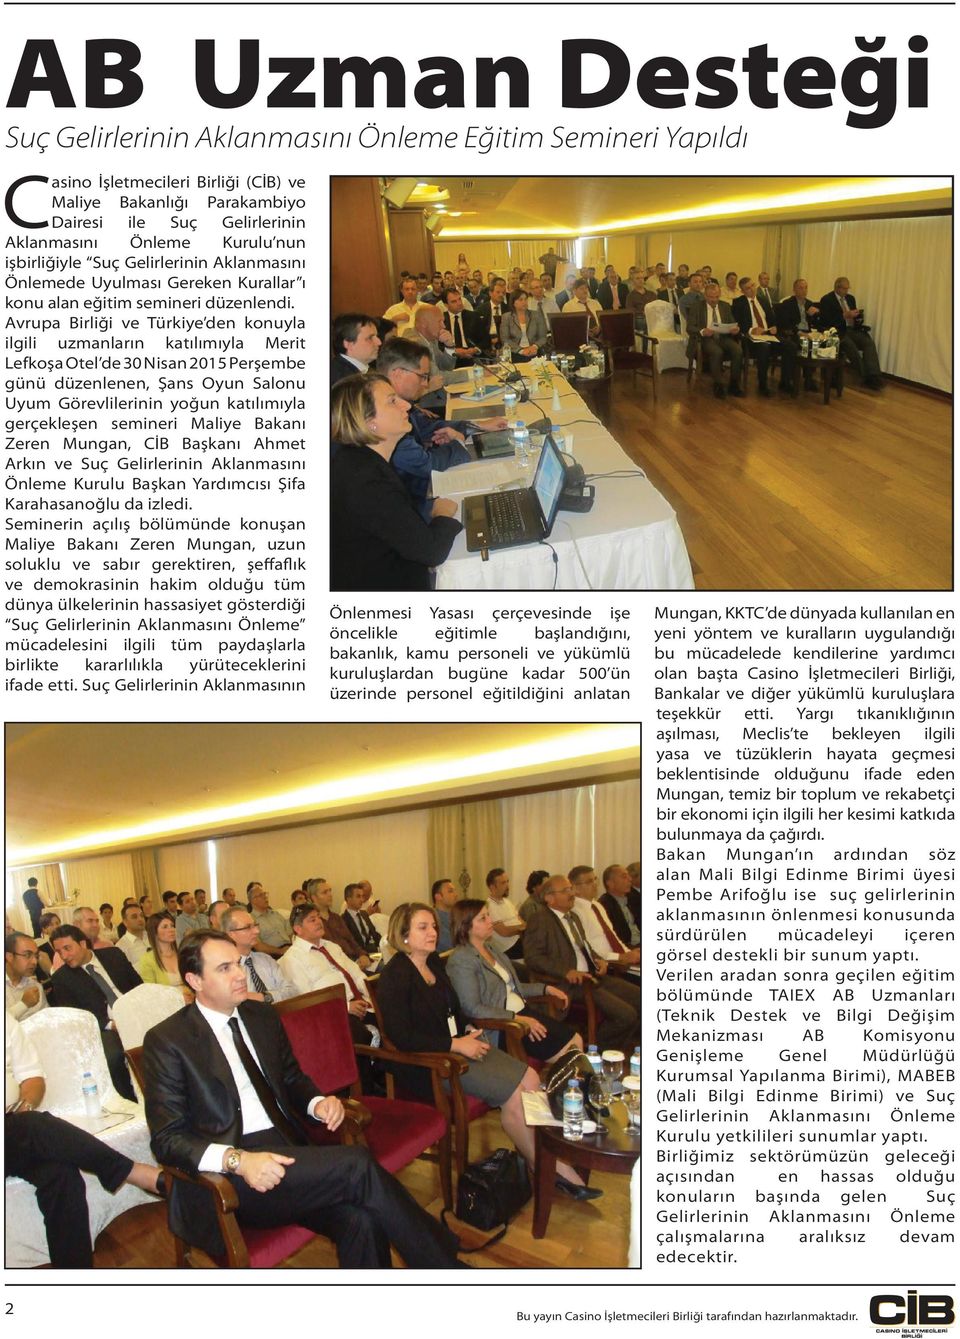 Avrupa Birliği ve Türkiye den konuyla ilgili uzmanların katılımıyla Merit Lefkoşa Otel de 30 Nisan 2015 Perşembe günü düzenlenen, Şans Oyun Salonu Uyum Görevlilerinin yoğun katılımıyla gerçekleşen